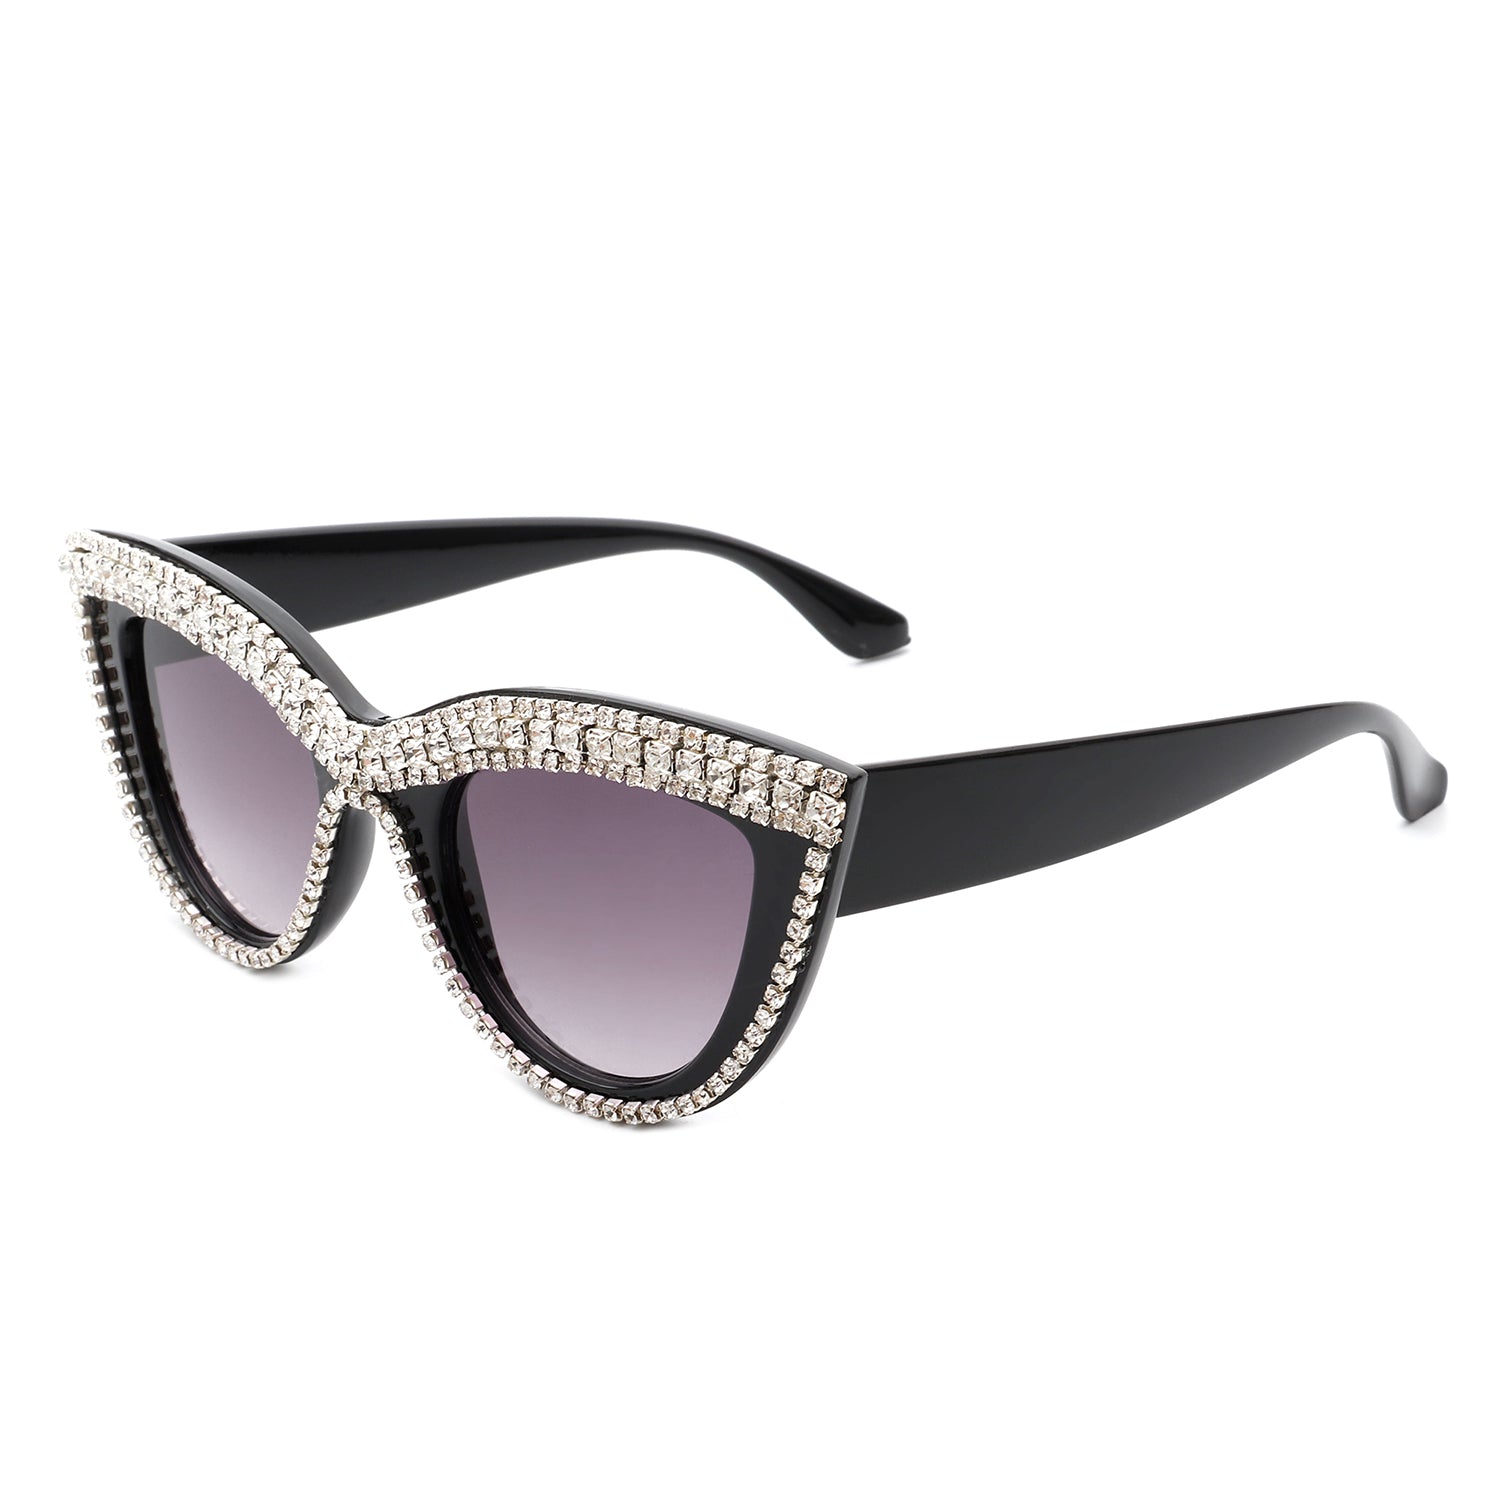 HS2084 - Women Round Fashion Rhinestone Cat Eye Sunglasses - Iris